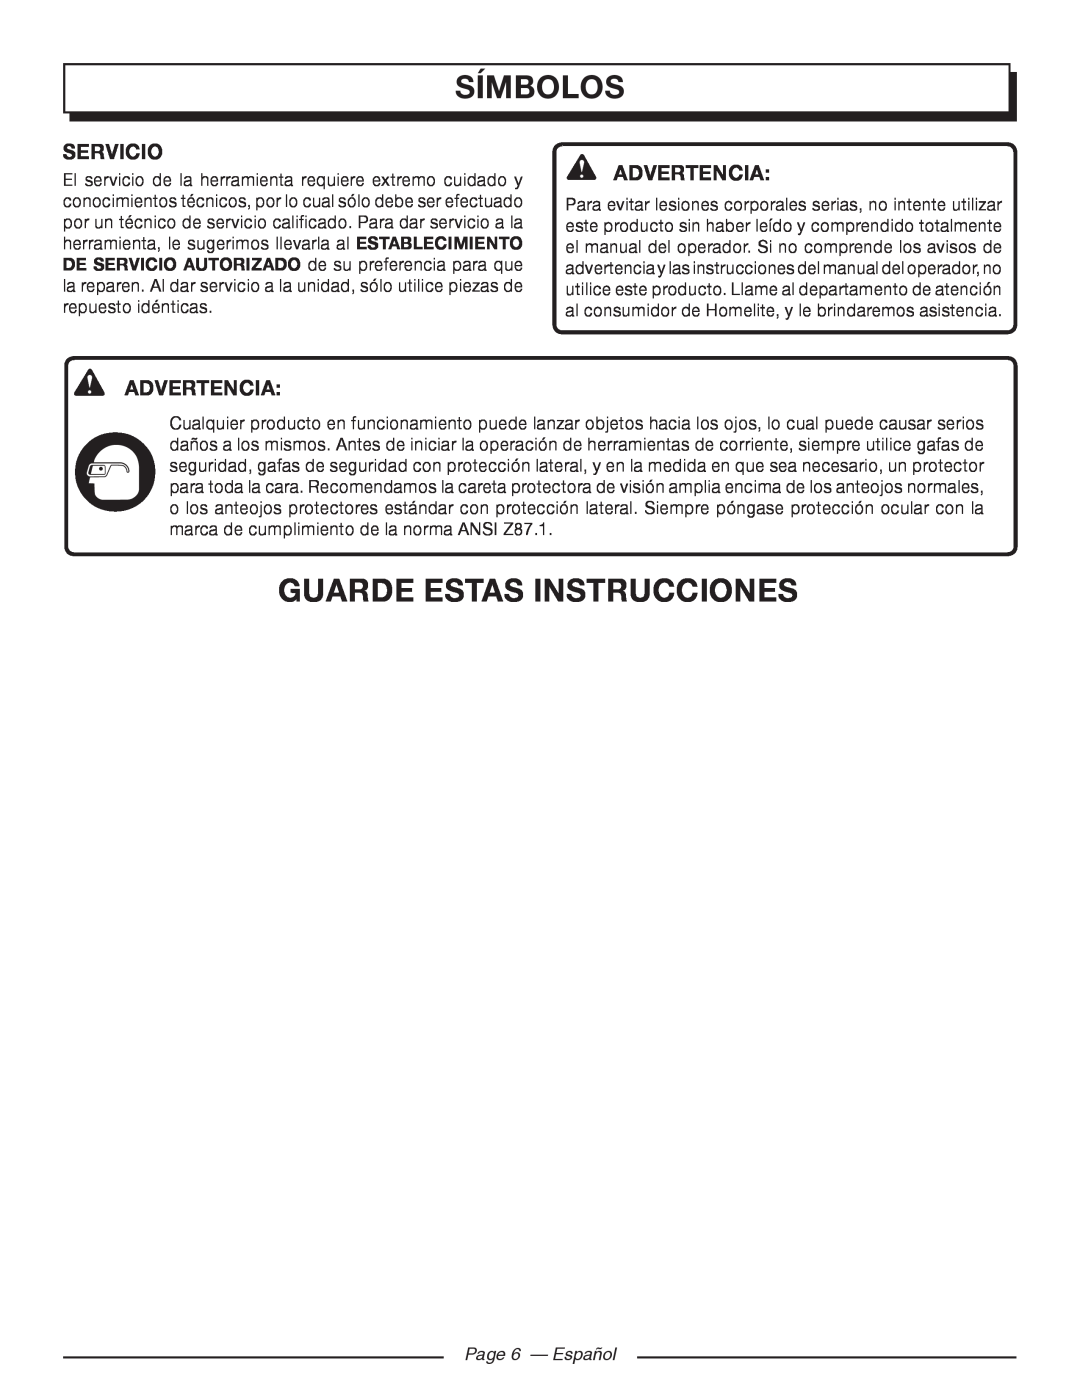 Homelite UT46510 manuel dutilisation Símbolos, guarde estas instrucciones, Servicio, Advertencia, Page 6 - Español 